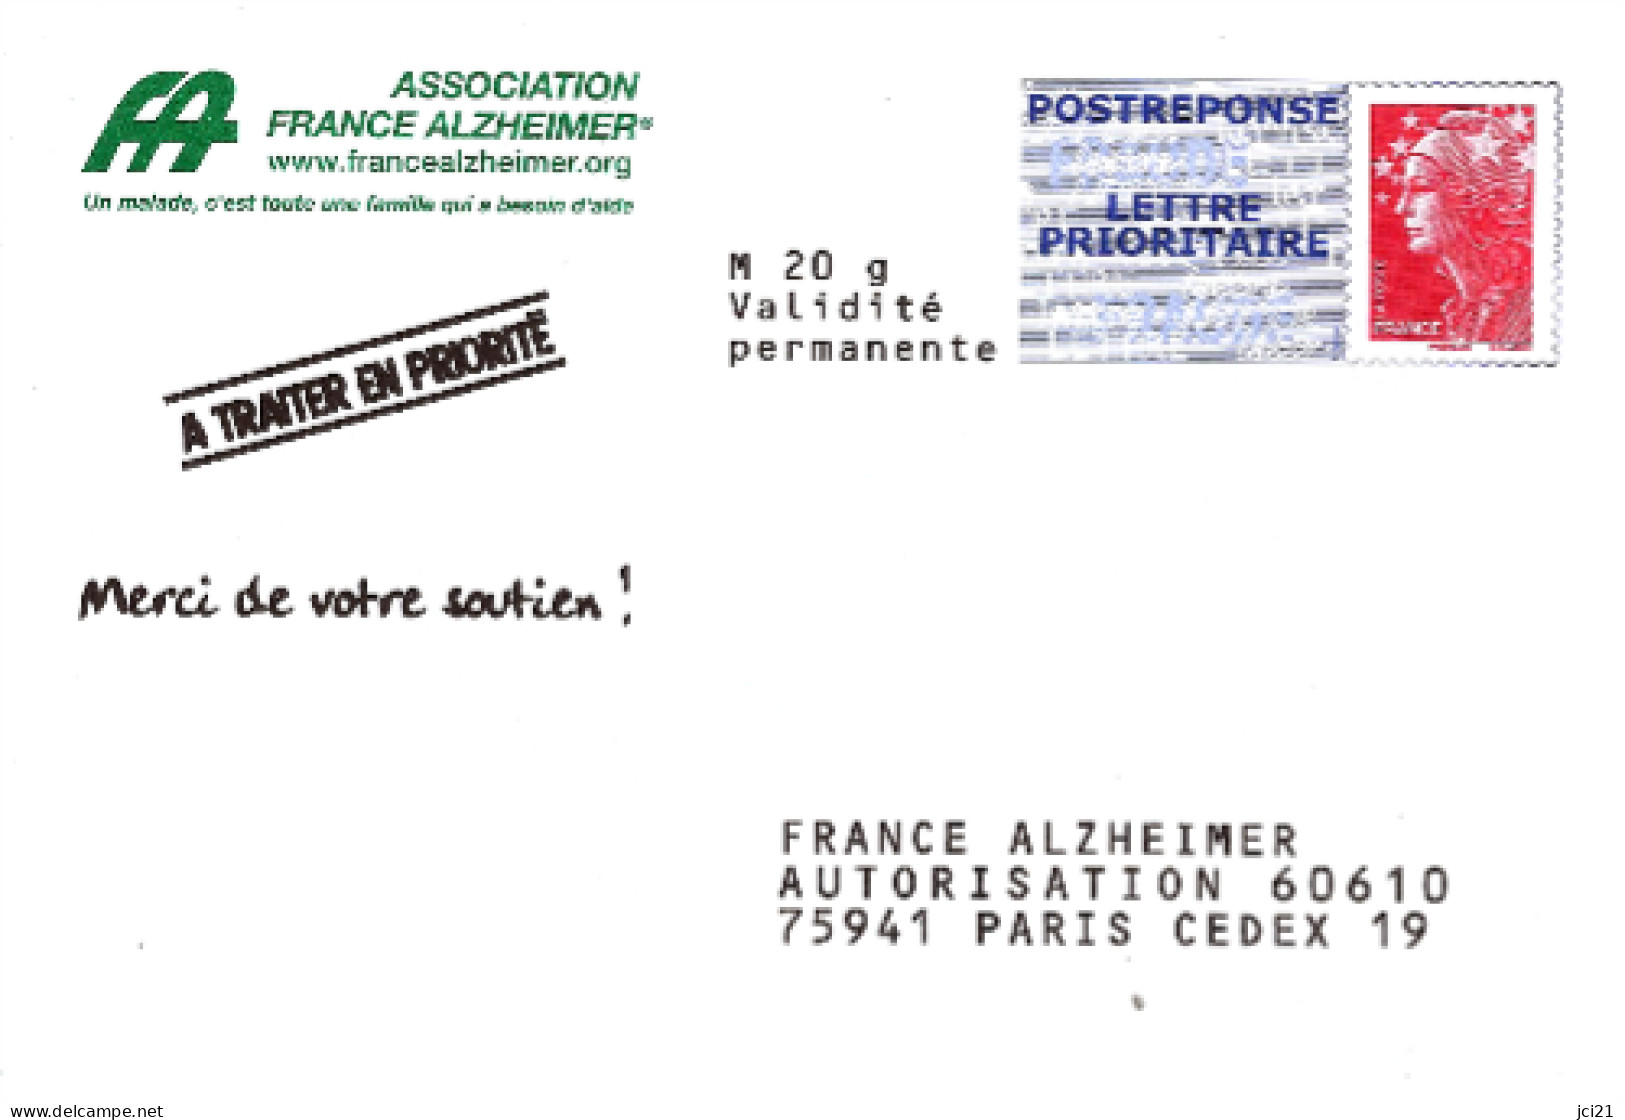 LOT DE 2 PAP BEAUJARD POSTREPONSE LETTRE PRIORITAIRE PHIL@POSTE-FRANCE ALZHEIMER- NEUVES (782)_P214 - Prêts-à-poster: Repiquages /Beaujard